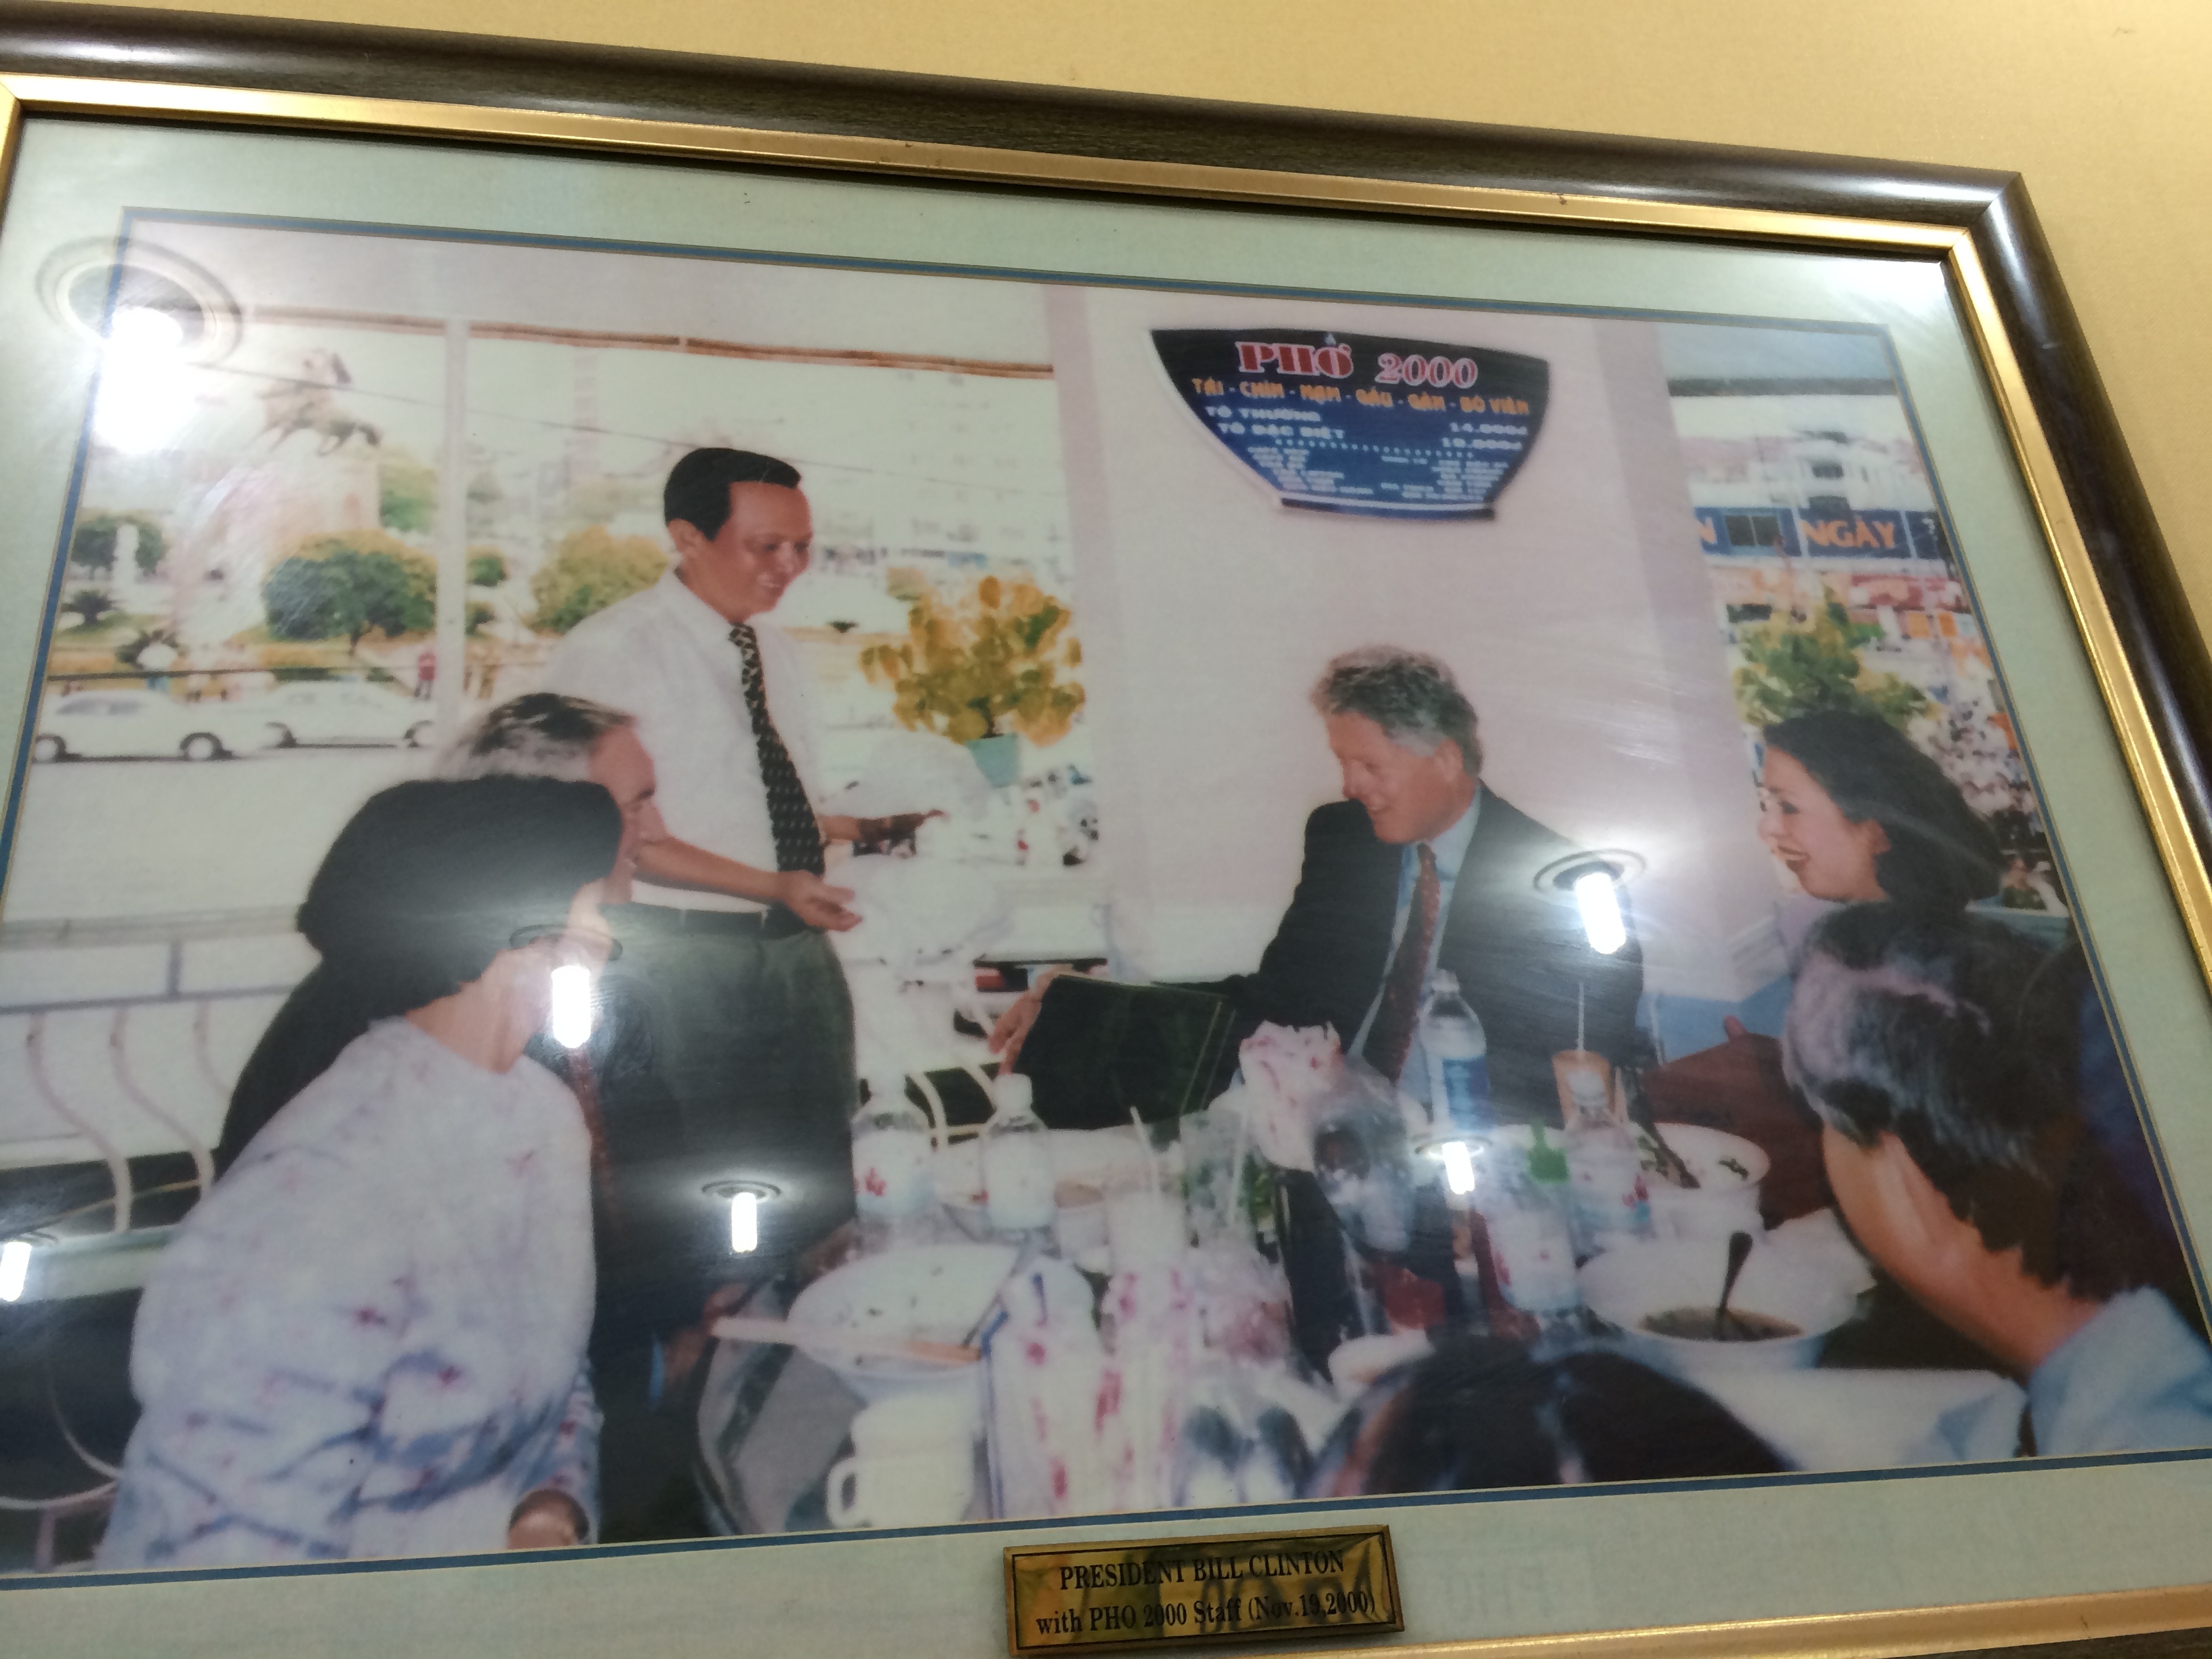 Pho 2000 Saigon: President Clinton's Bad Dining Advice3264 x 2448